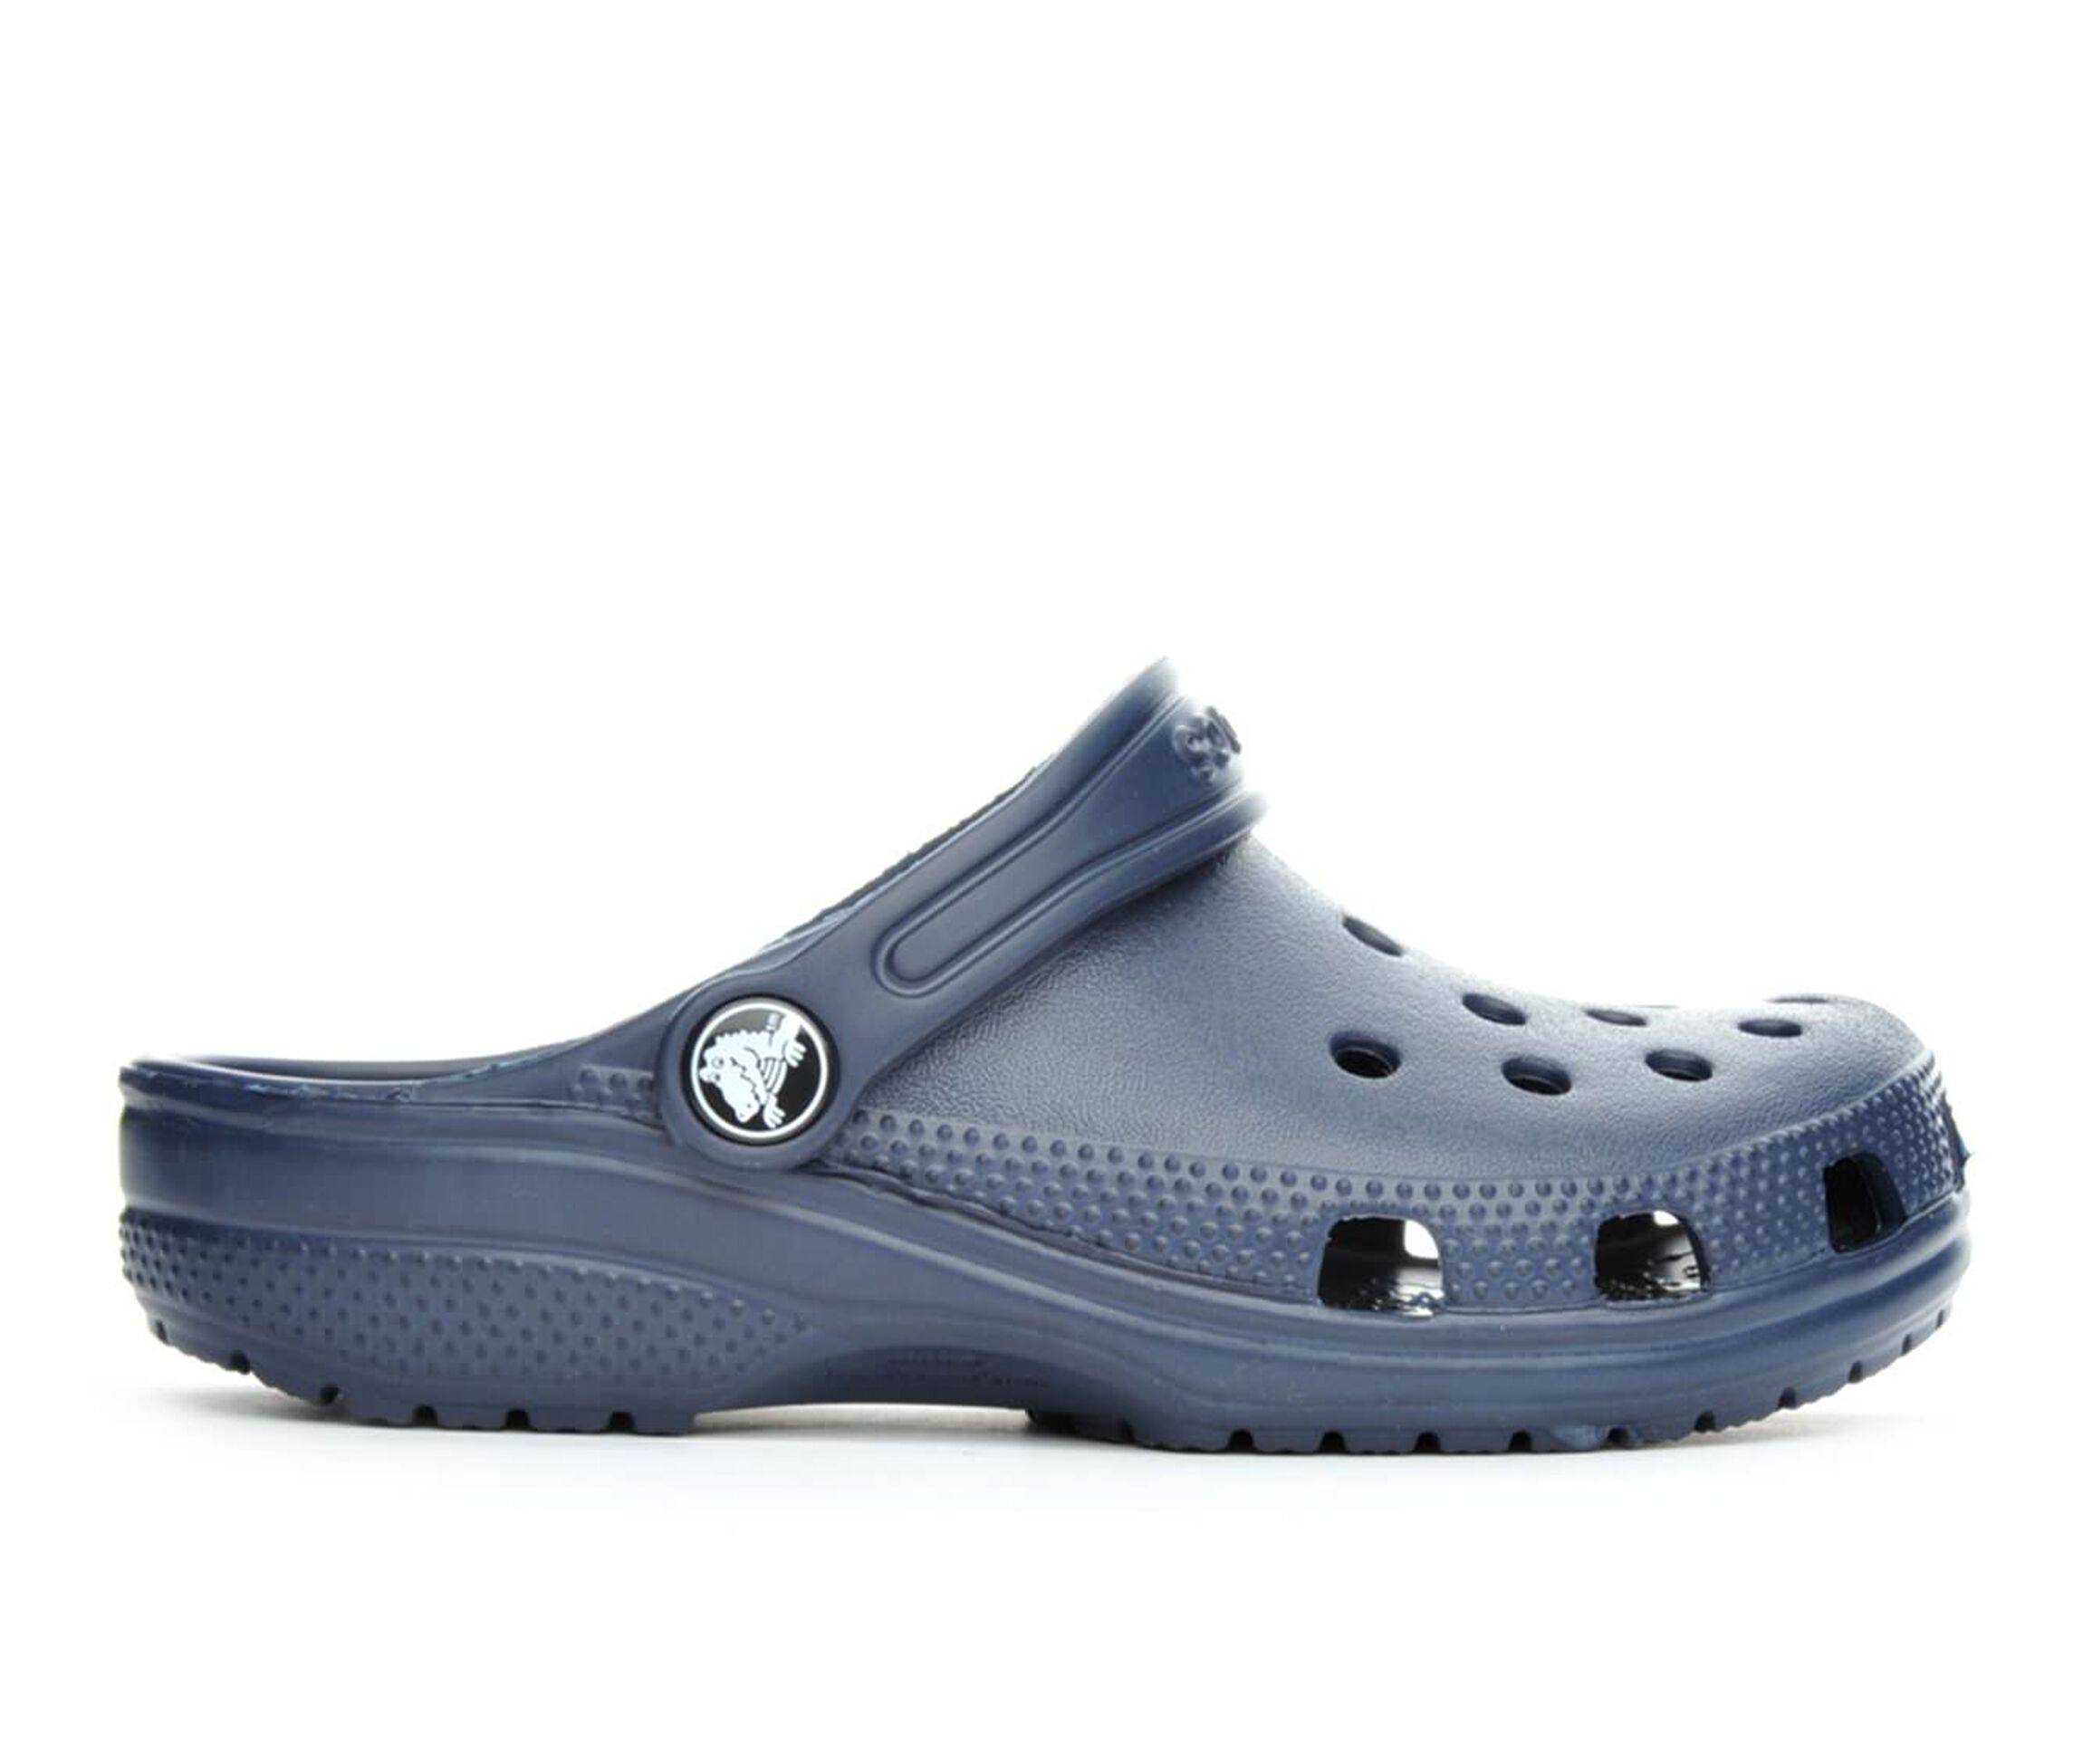 shoe carnival kids crocs